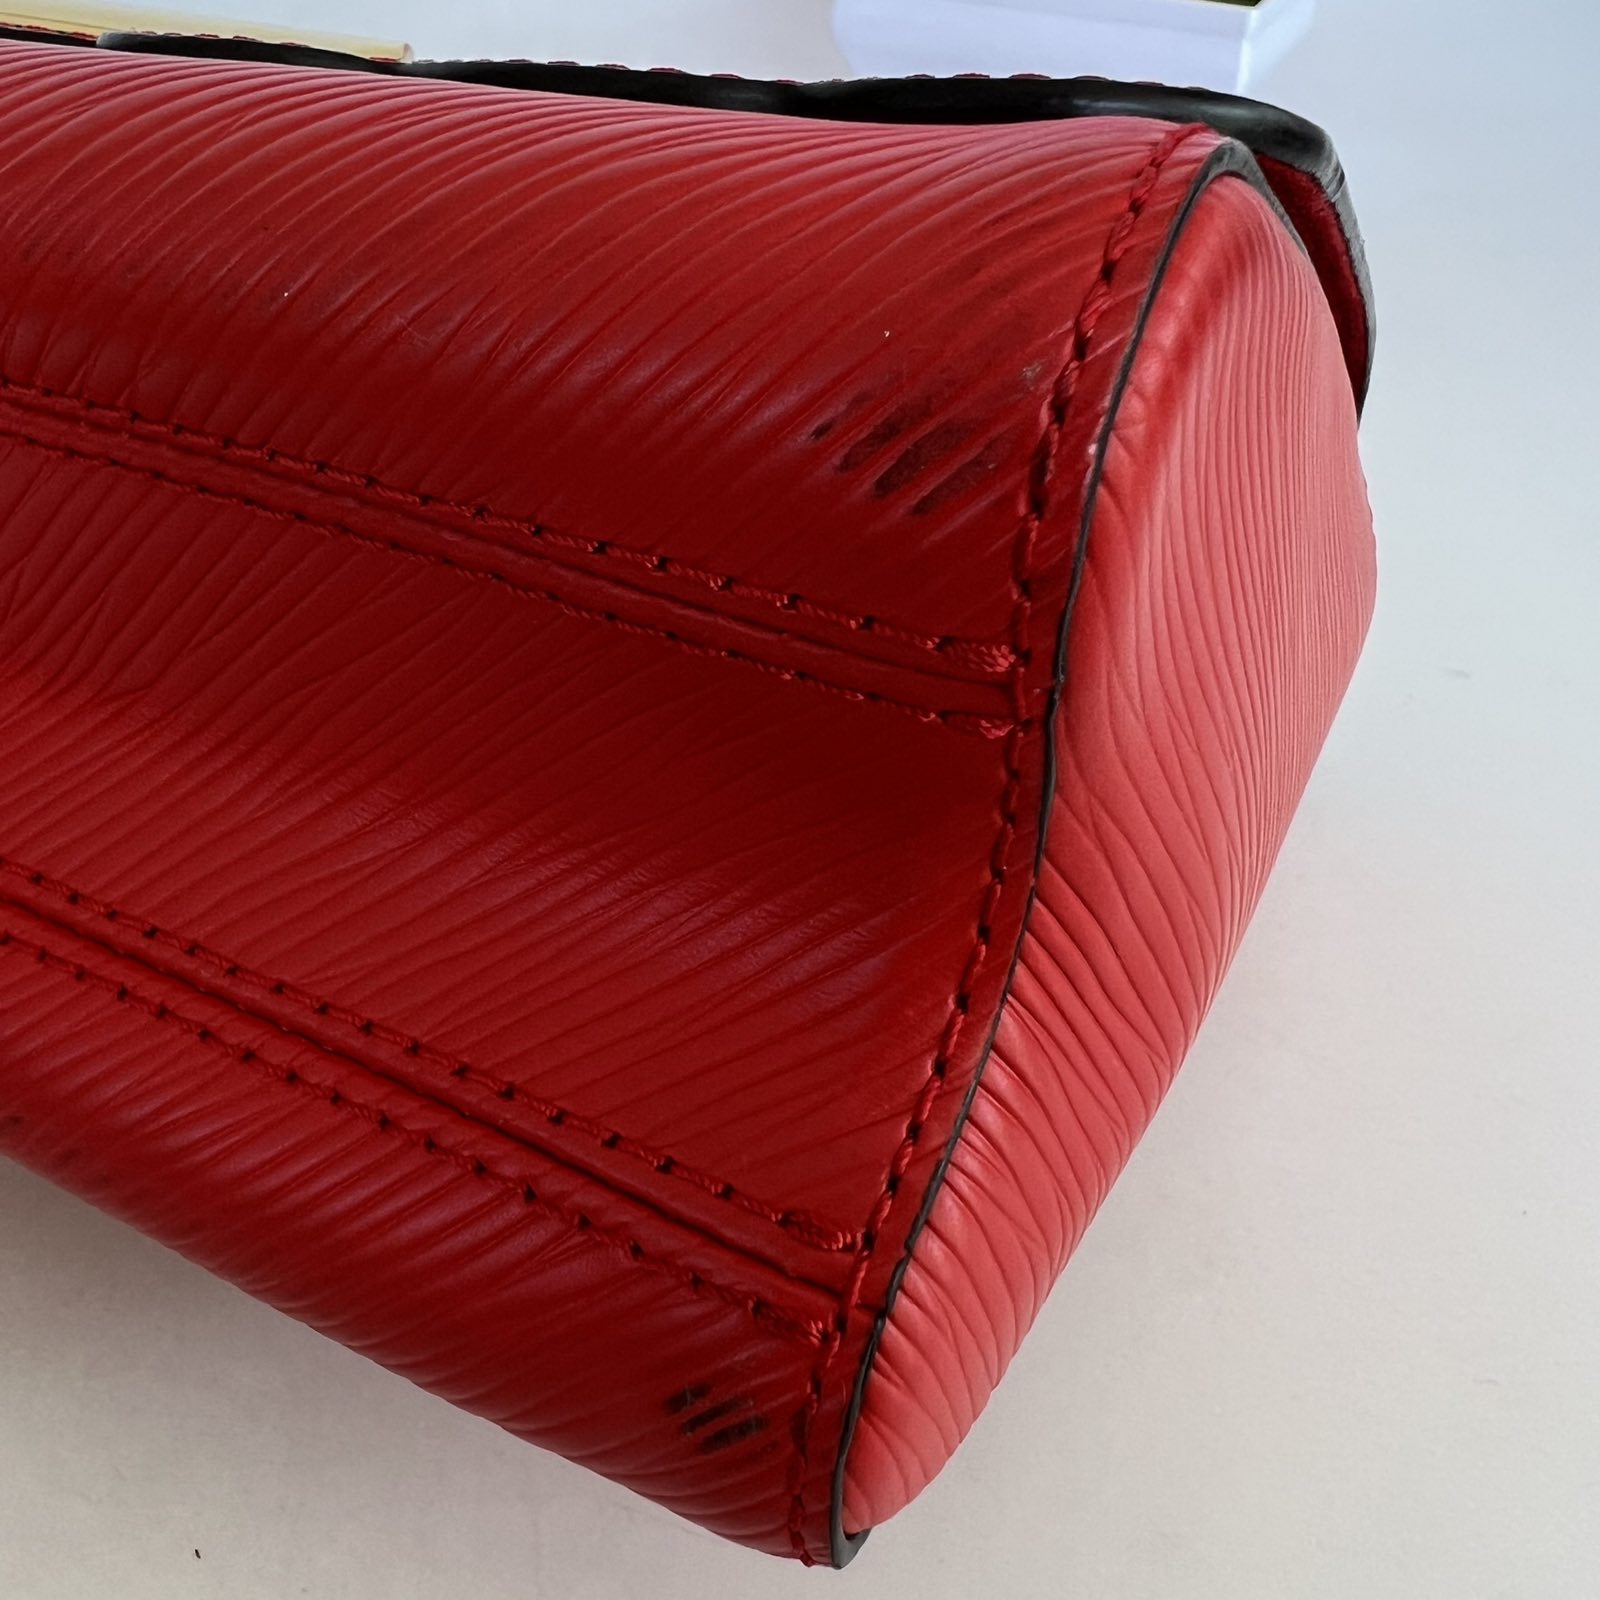 Louis Vuitton Epi Leather Black/Red Floral Twist Bag. DC: FL3142